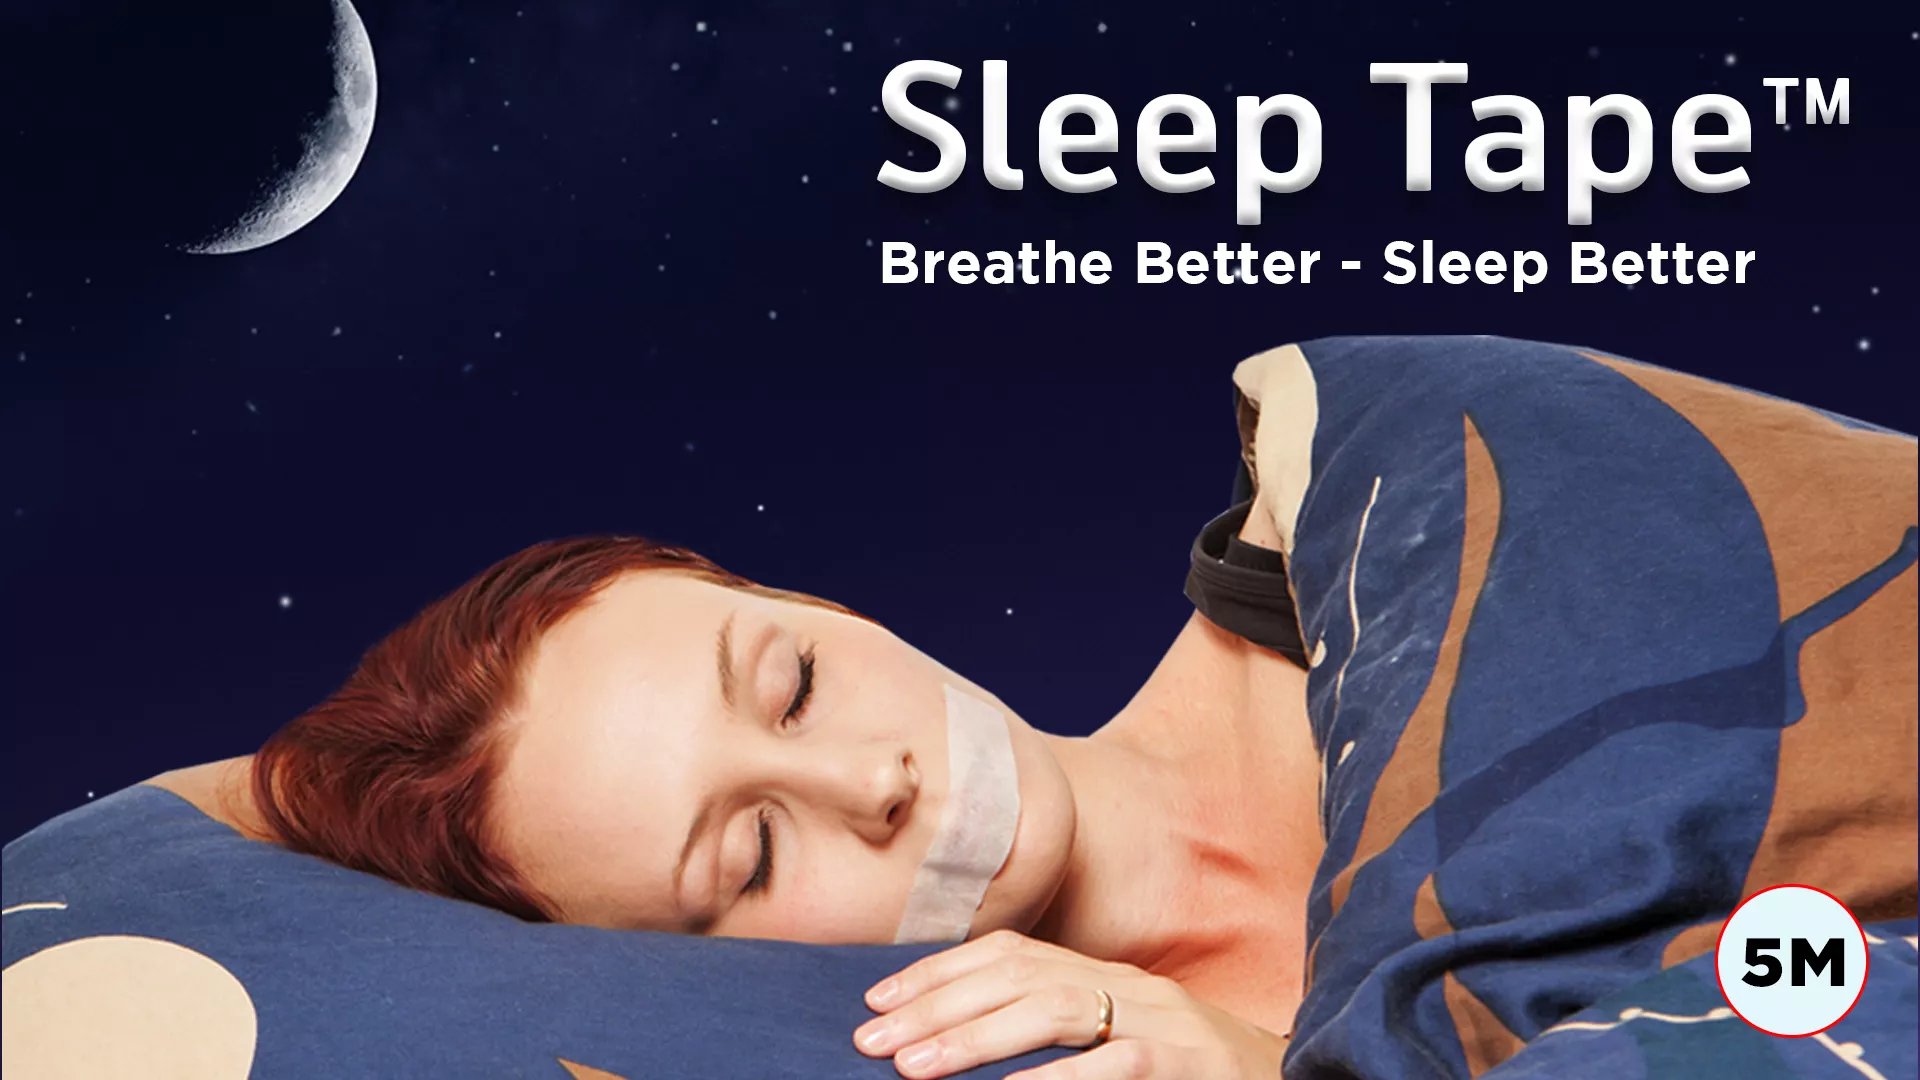 Sleep tape 5M - lepící páska pro dýchání nosem na 5 měsíců